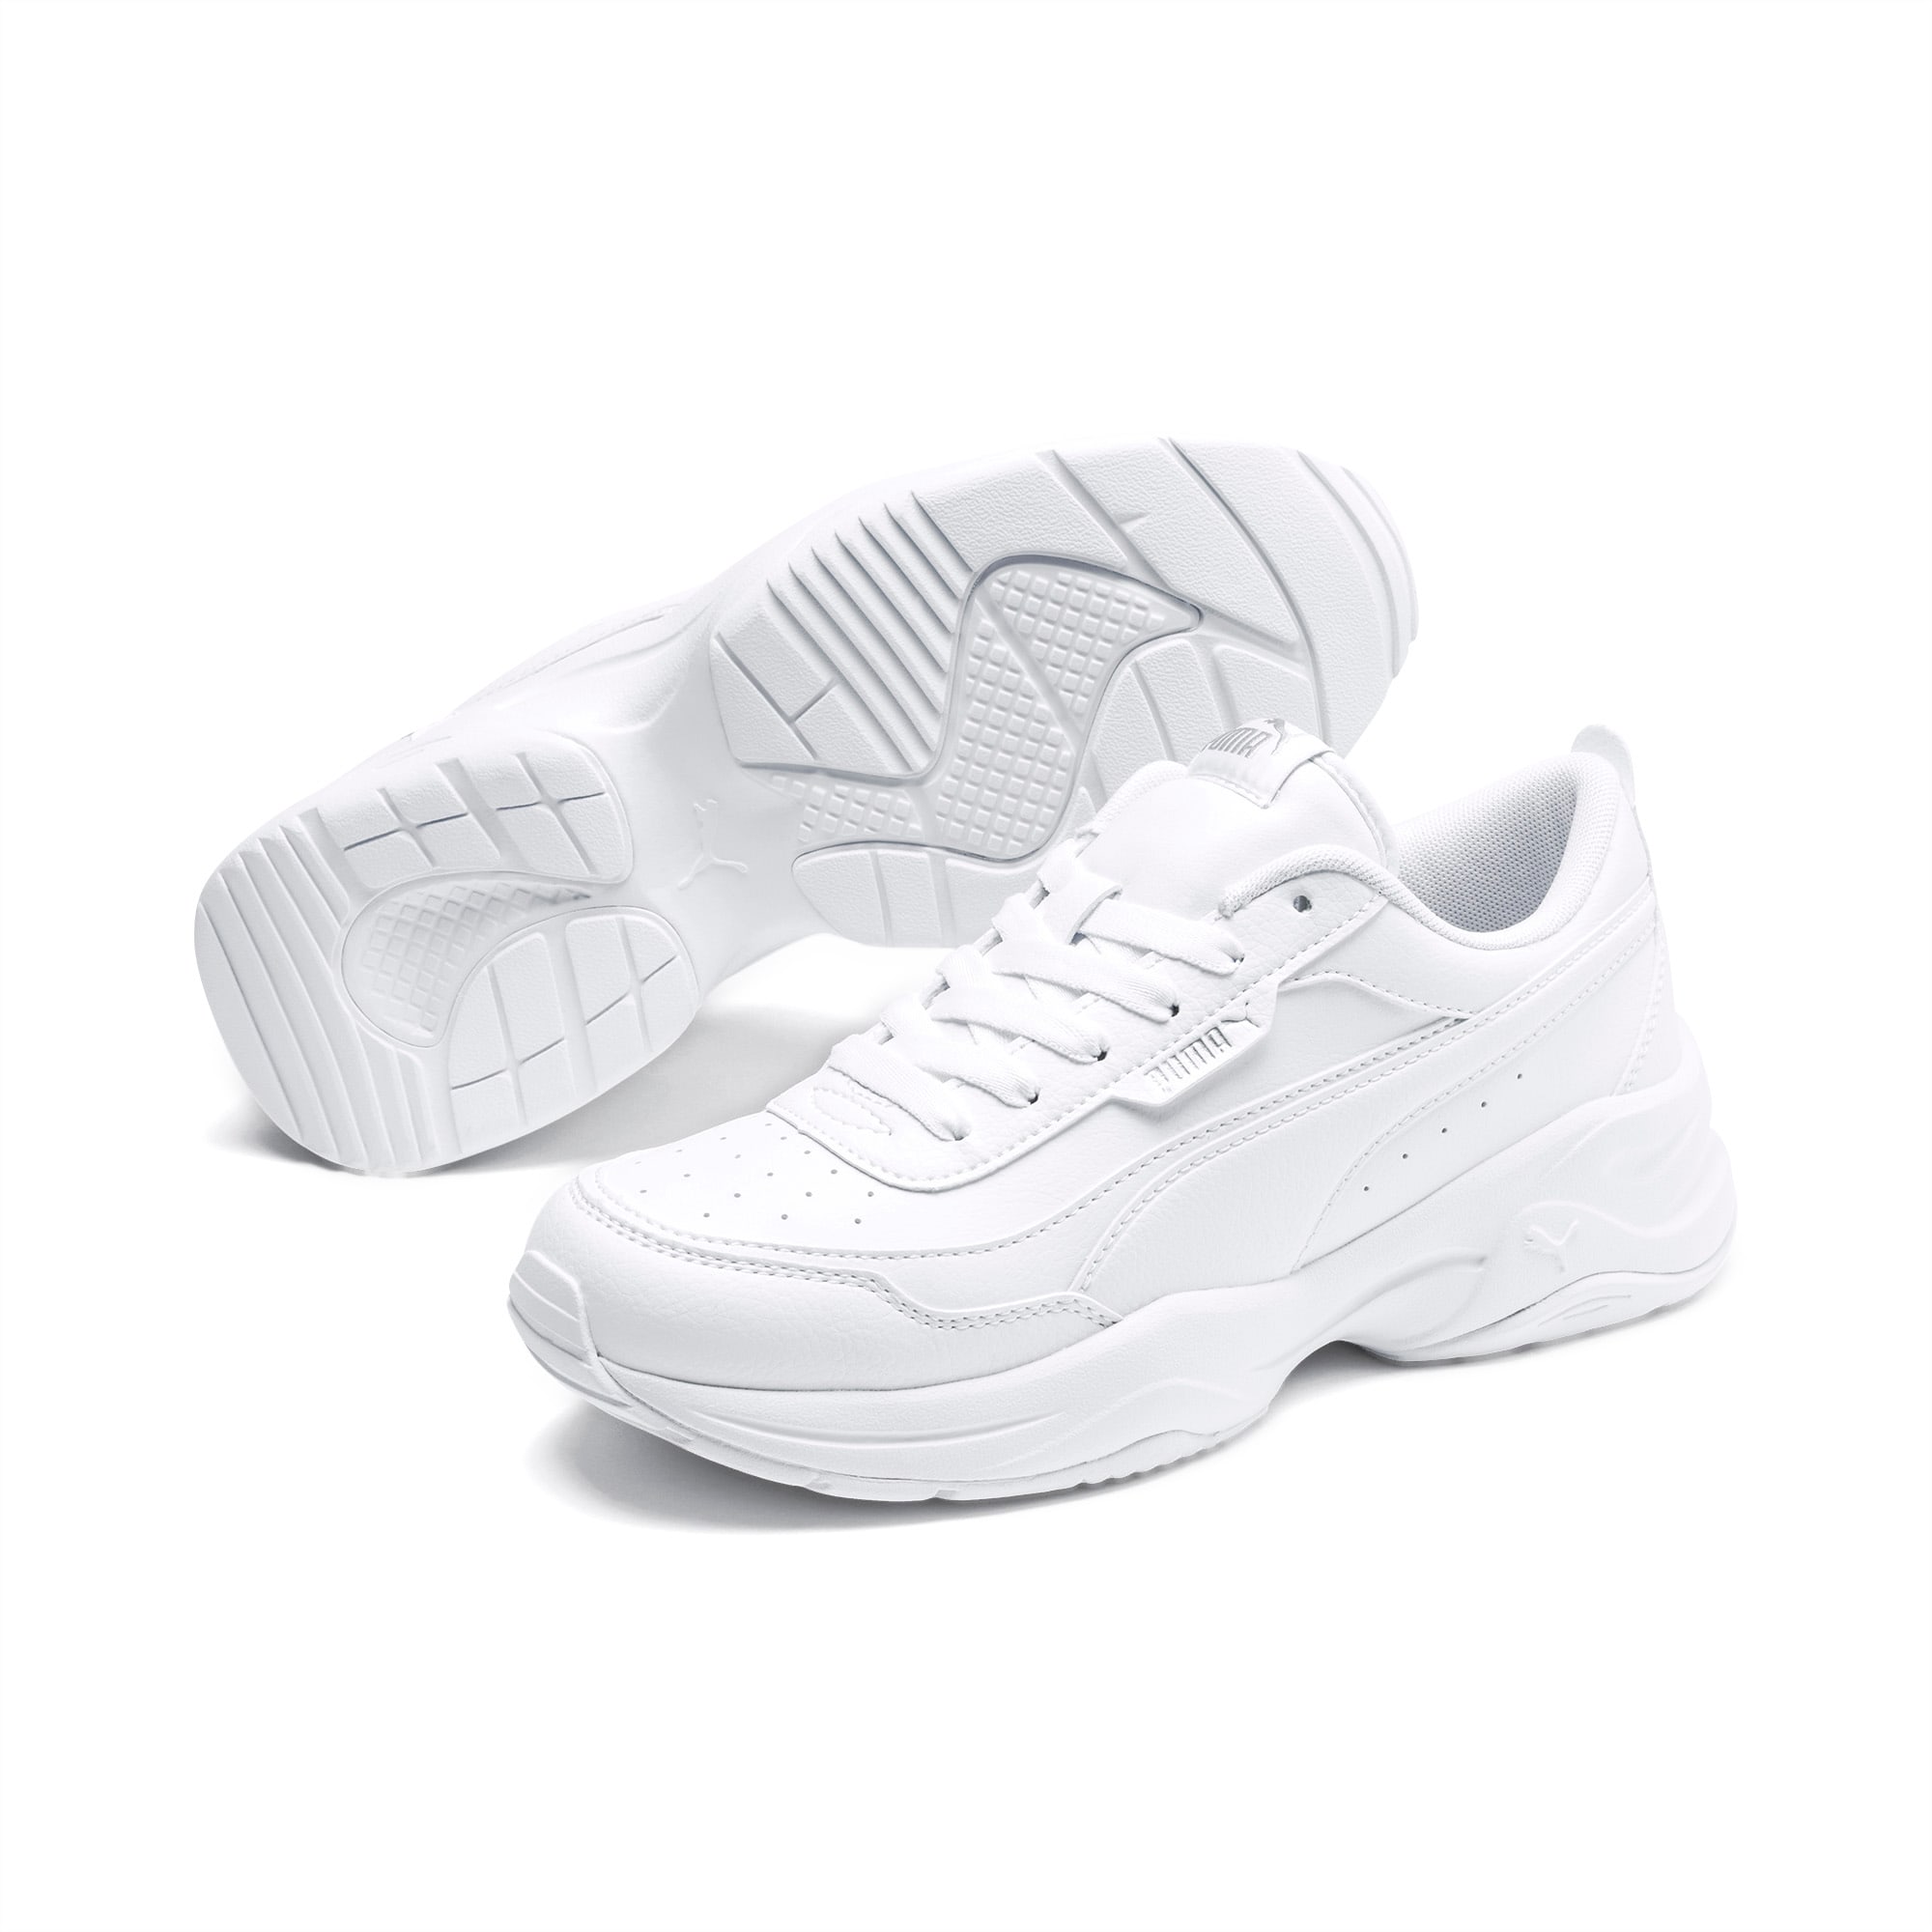 PUMA Cilia Mode Sneakers Damen Schuhe, Weiß/Silber, Größe: 35.5, Schuhe